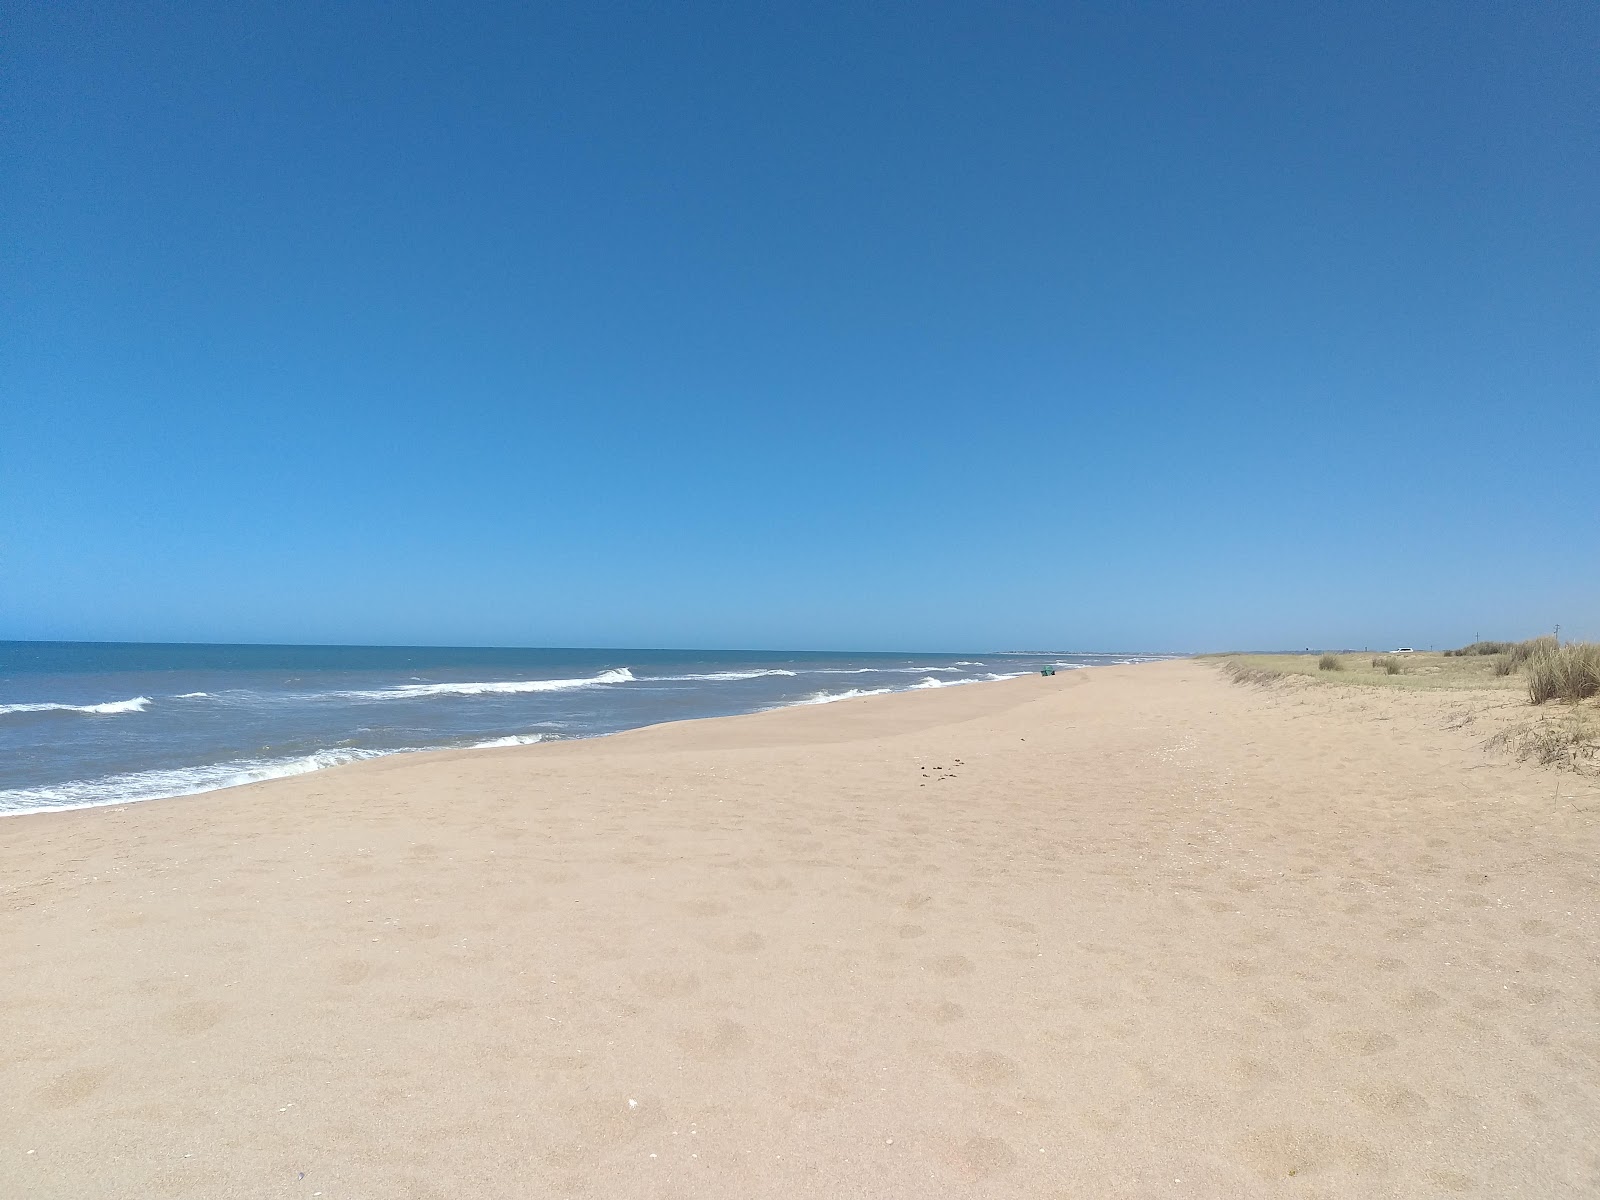 Fotografie cu Escondida Beach cu o suprafață de nisip strălucitor